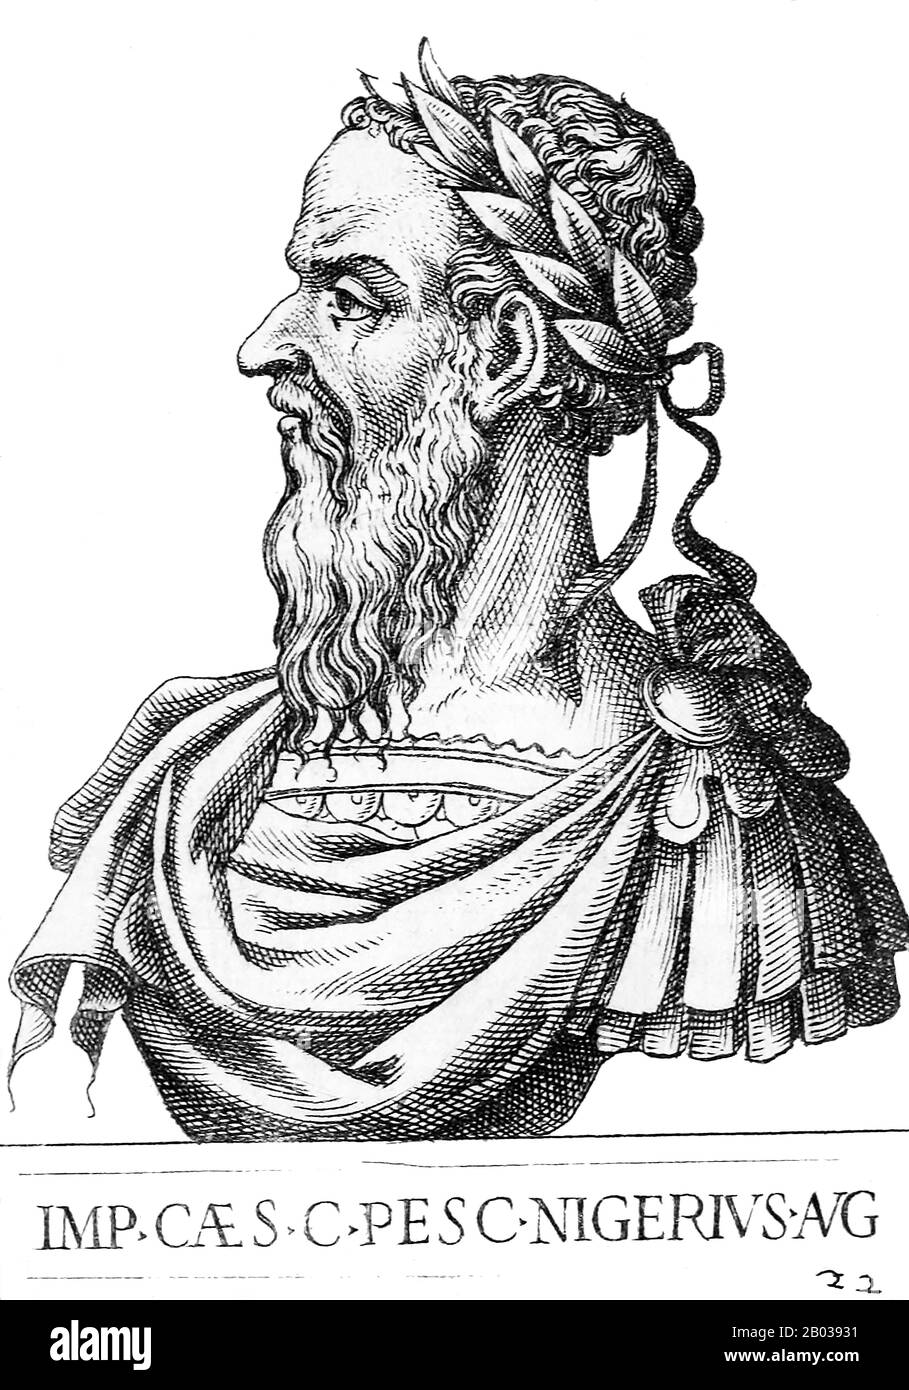 Pescennius Niger (135/140-194) wurde in eine alte italienische Reiterfamilie geboren und war das erste Mitglied, das römische Senatorin wurde. Er wurde 191 von Commodus zum kaiserlichen Legaten Syriens ernannt, wo er diente, als die Nachricht über die Ermordung Pertinax im Jahr 193 und die Versteigerung des kaiserlichen Throns an Didius Julianus kam. Niger war eine gut beachtete öffentliche Persönlichkeit, und die Bürger Roms forderten ihn auf, nach Rom zurückzukehren und den Titel von Julianus zu beanspruchen. Folglich proklamierten die östlichen Legionen den Niger 193 zum Kaiser, den zweiten Kaiser, der nach Septimiu den kaiserlichen Titel beanspruchen sollte Stockfoto